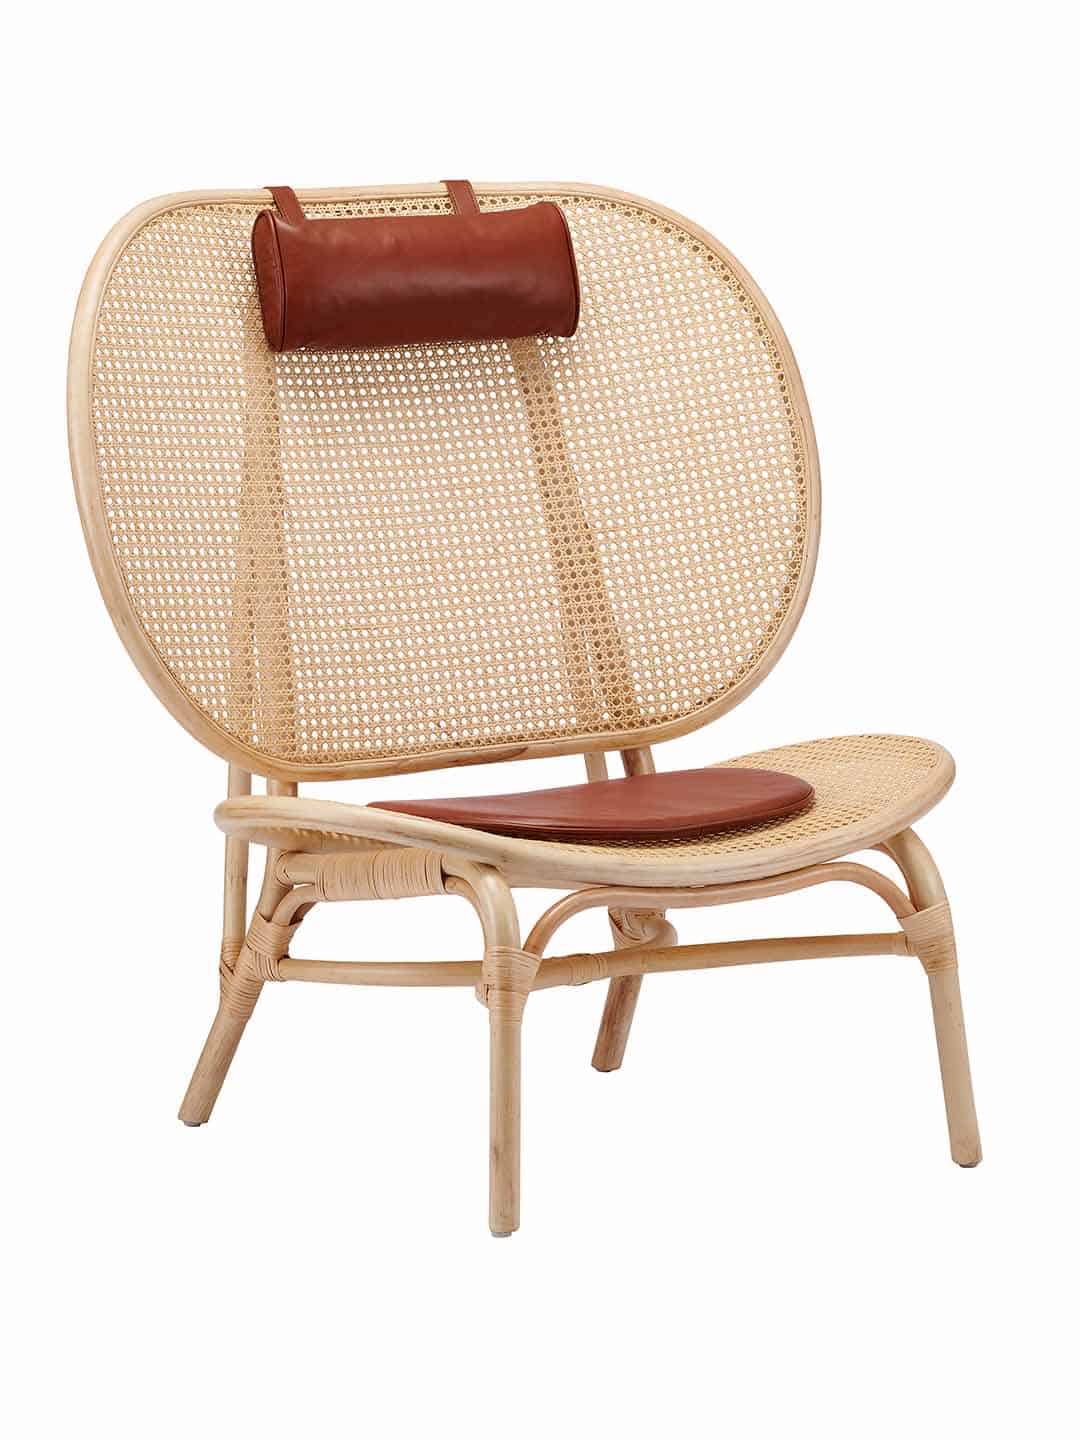 Практичное кресло NORR11 Nomad с подушками из кожи коньячного цвета